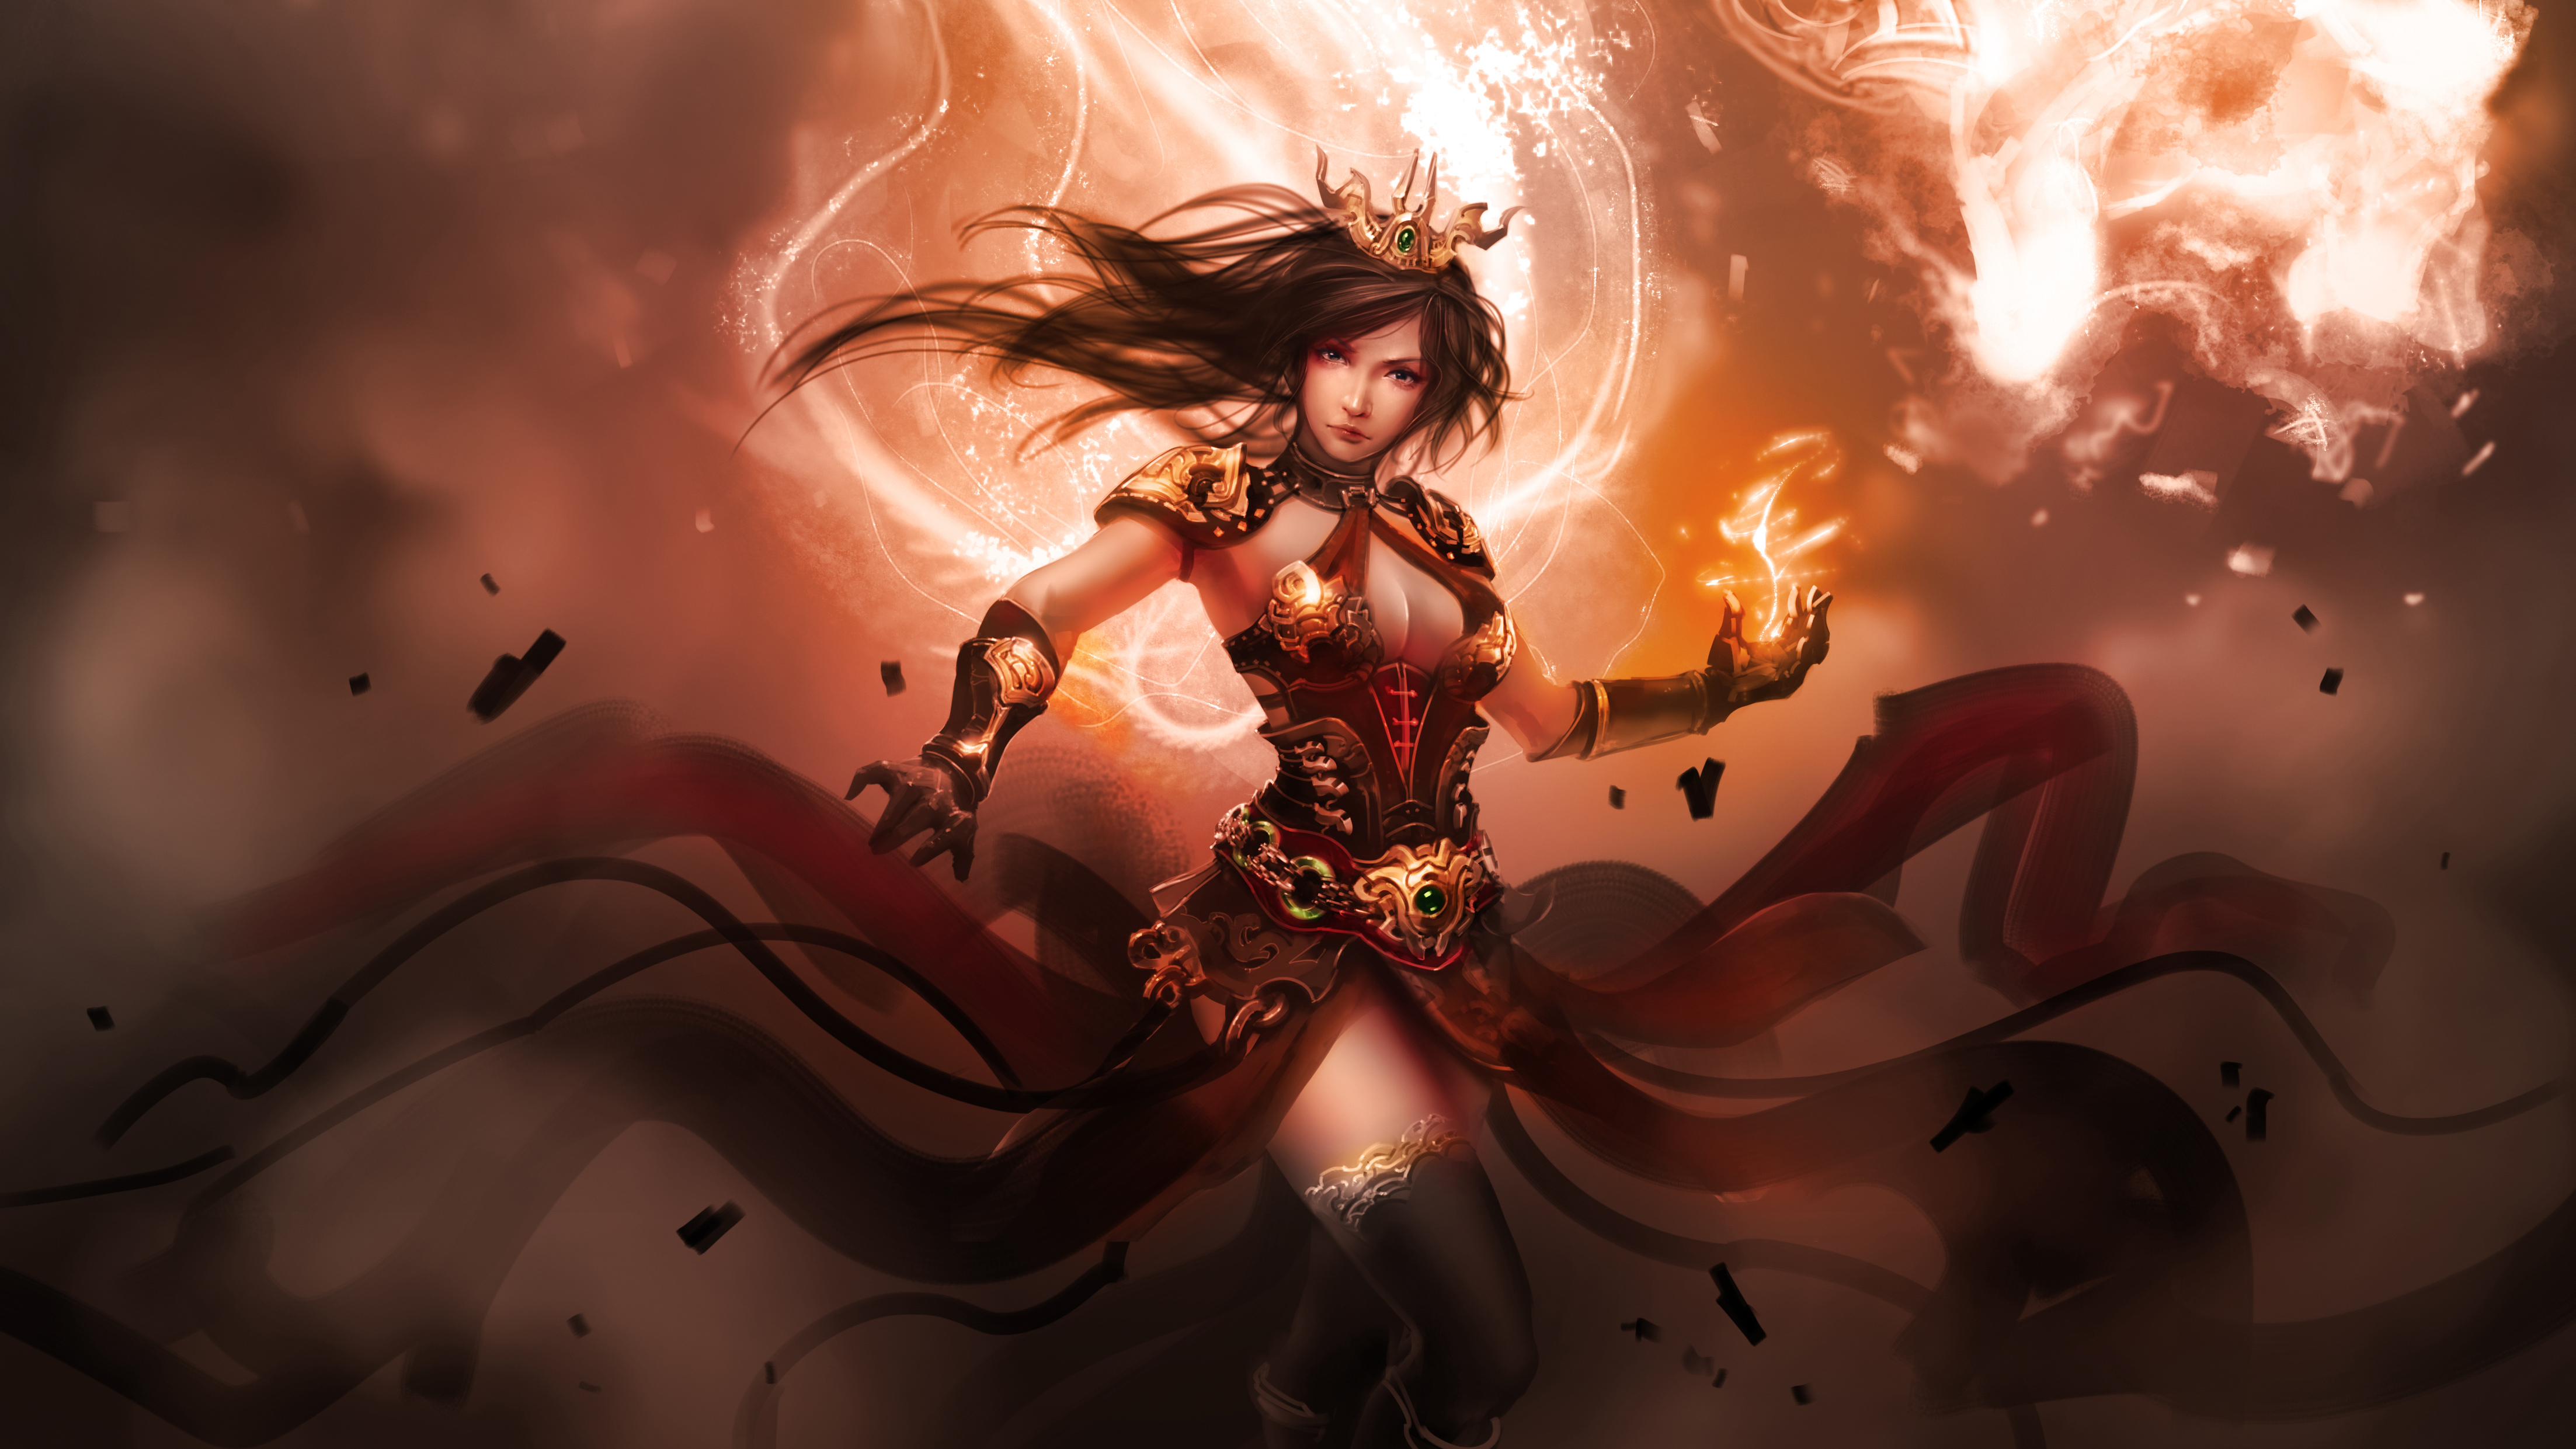 Female Warrior Fantasy 4k Artist